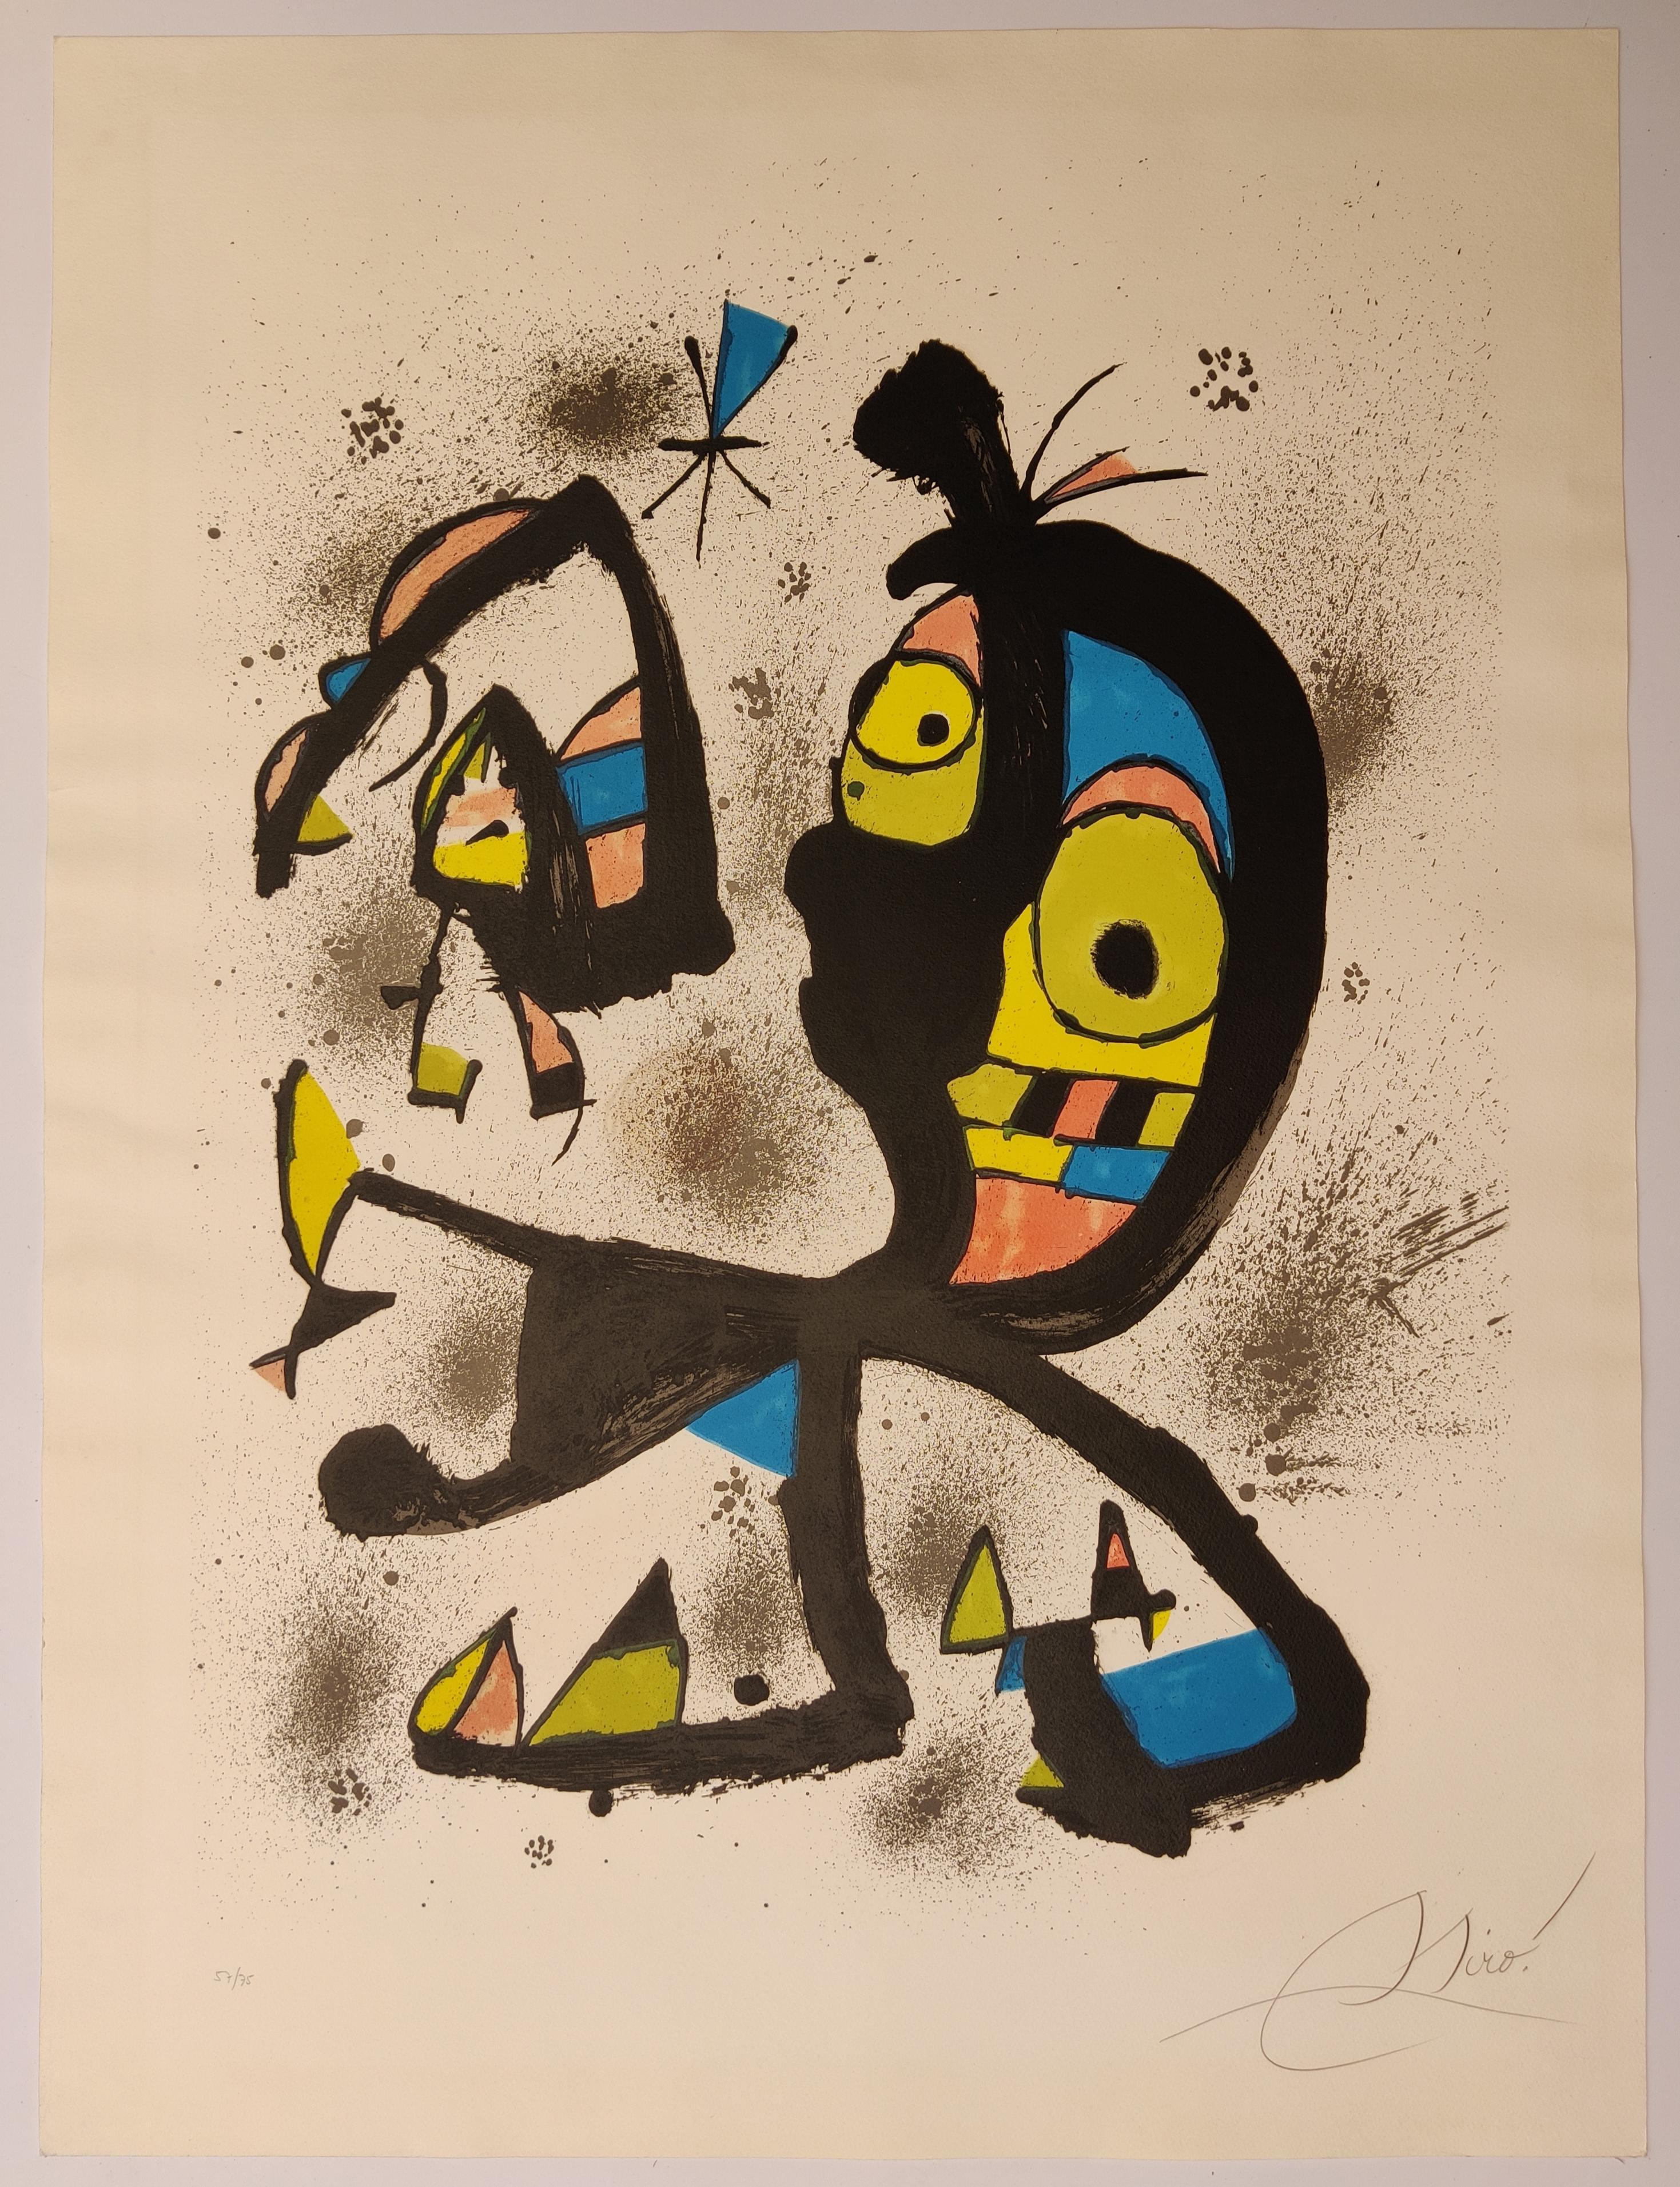 Joan Miró
Obra Gràfica (Grafisches Werk),  1980
Farblithographie auf Arches-Papier, vollrandig.
Bildgröße 78 x 58 cm
Blattgröße 94 x 70 cm
Signiert und nummeriert 57/75 in Bleistift (es gab auch 20 hors commerce in römischen Ziffern)
Herausgegeben